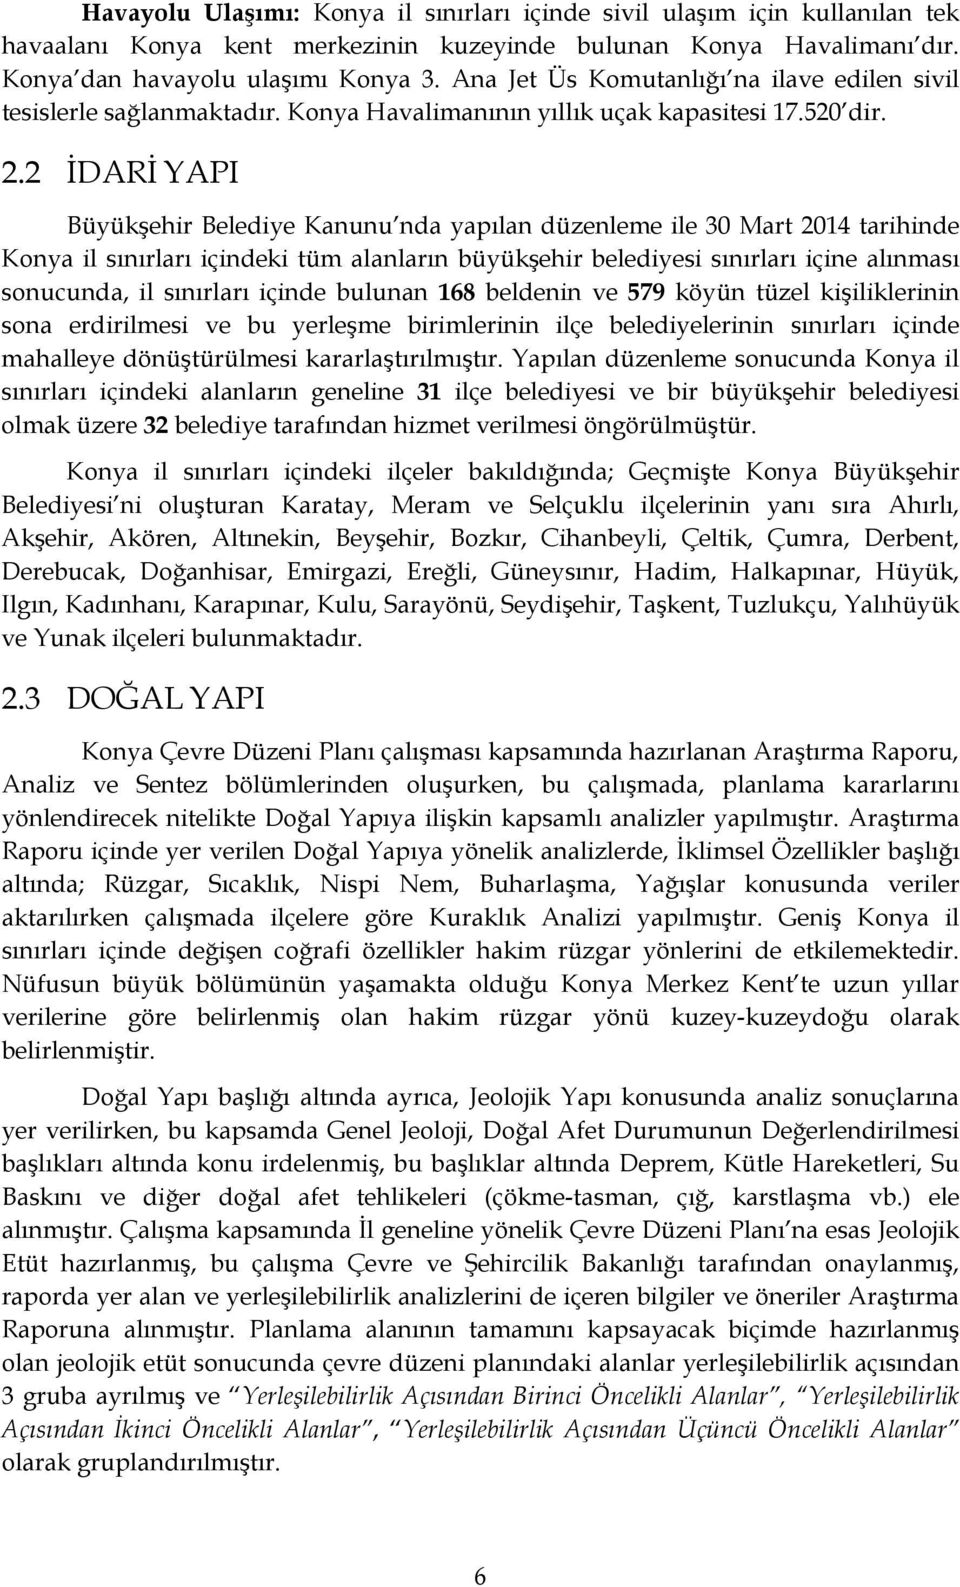 2 İDARİ YAPI Büyükşehir Belediye Kanunu nda yapılan düzenleme ile 30 Mart 2014 tarihinde Konya il sınırları içindeki tüm alanların büyükşehir belediyesi sınırları içine alınması sonucunda, il